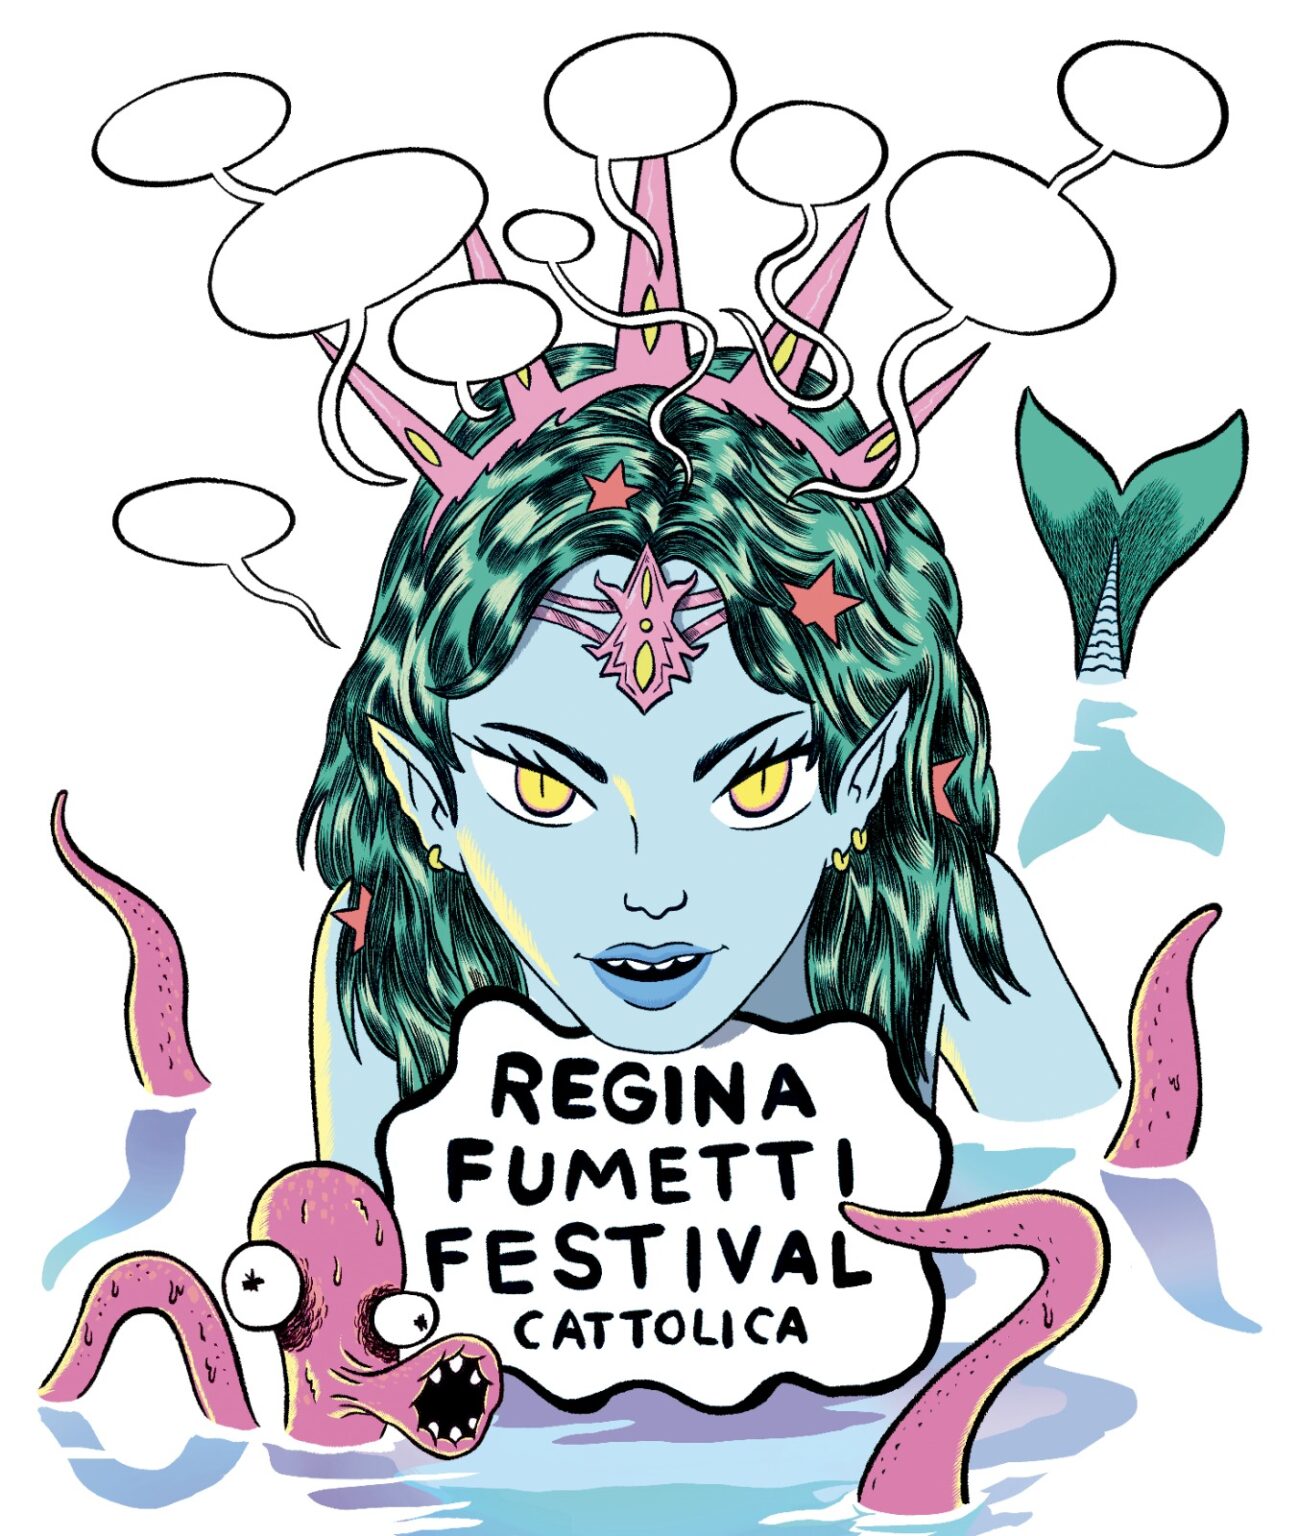 Regina Fumetti Festival: Cattolica si prepara a tre giorni di fumetti, musica e illustrazione